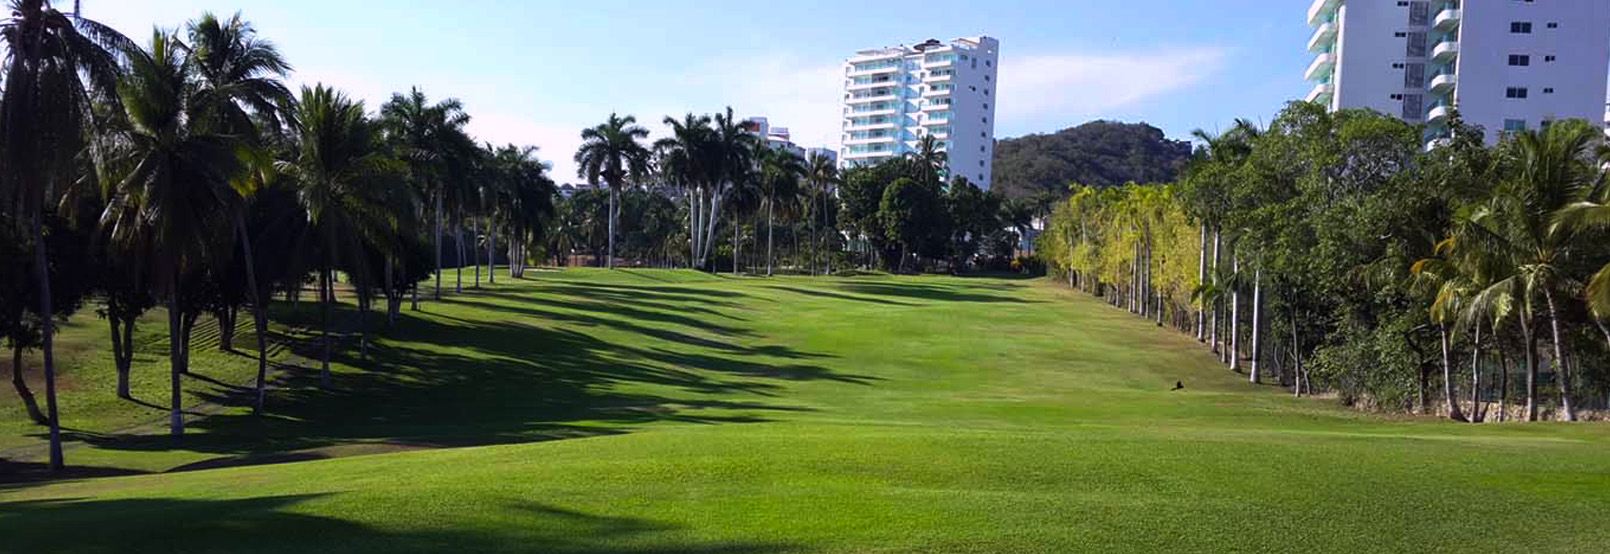 Club de Golf Acapulco ACAPULCO 2